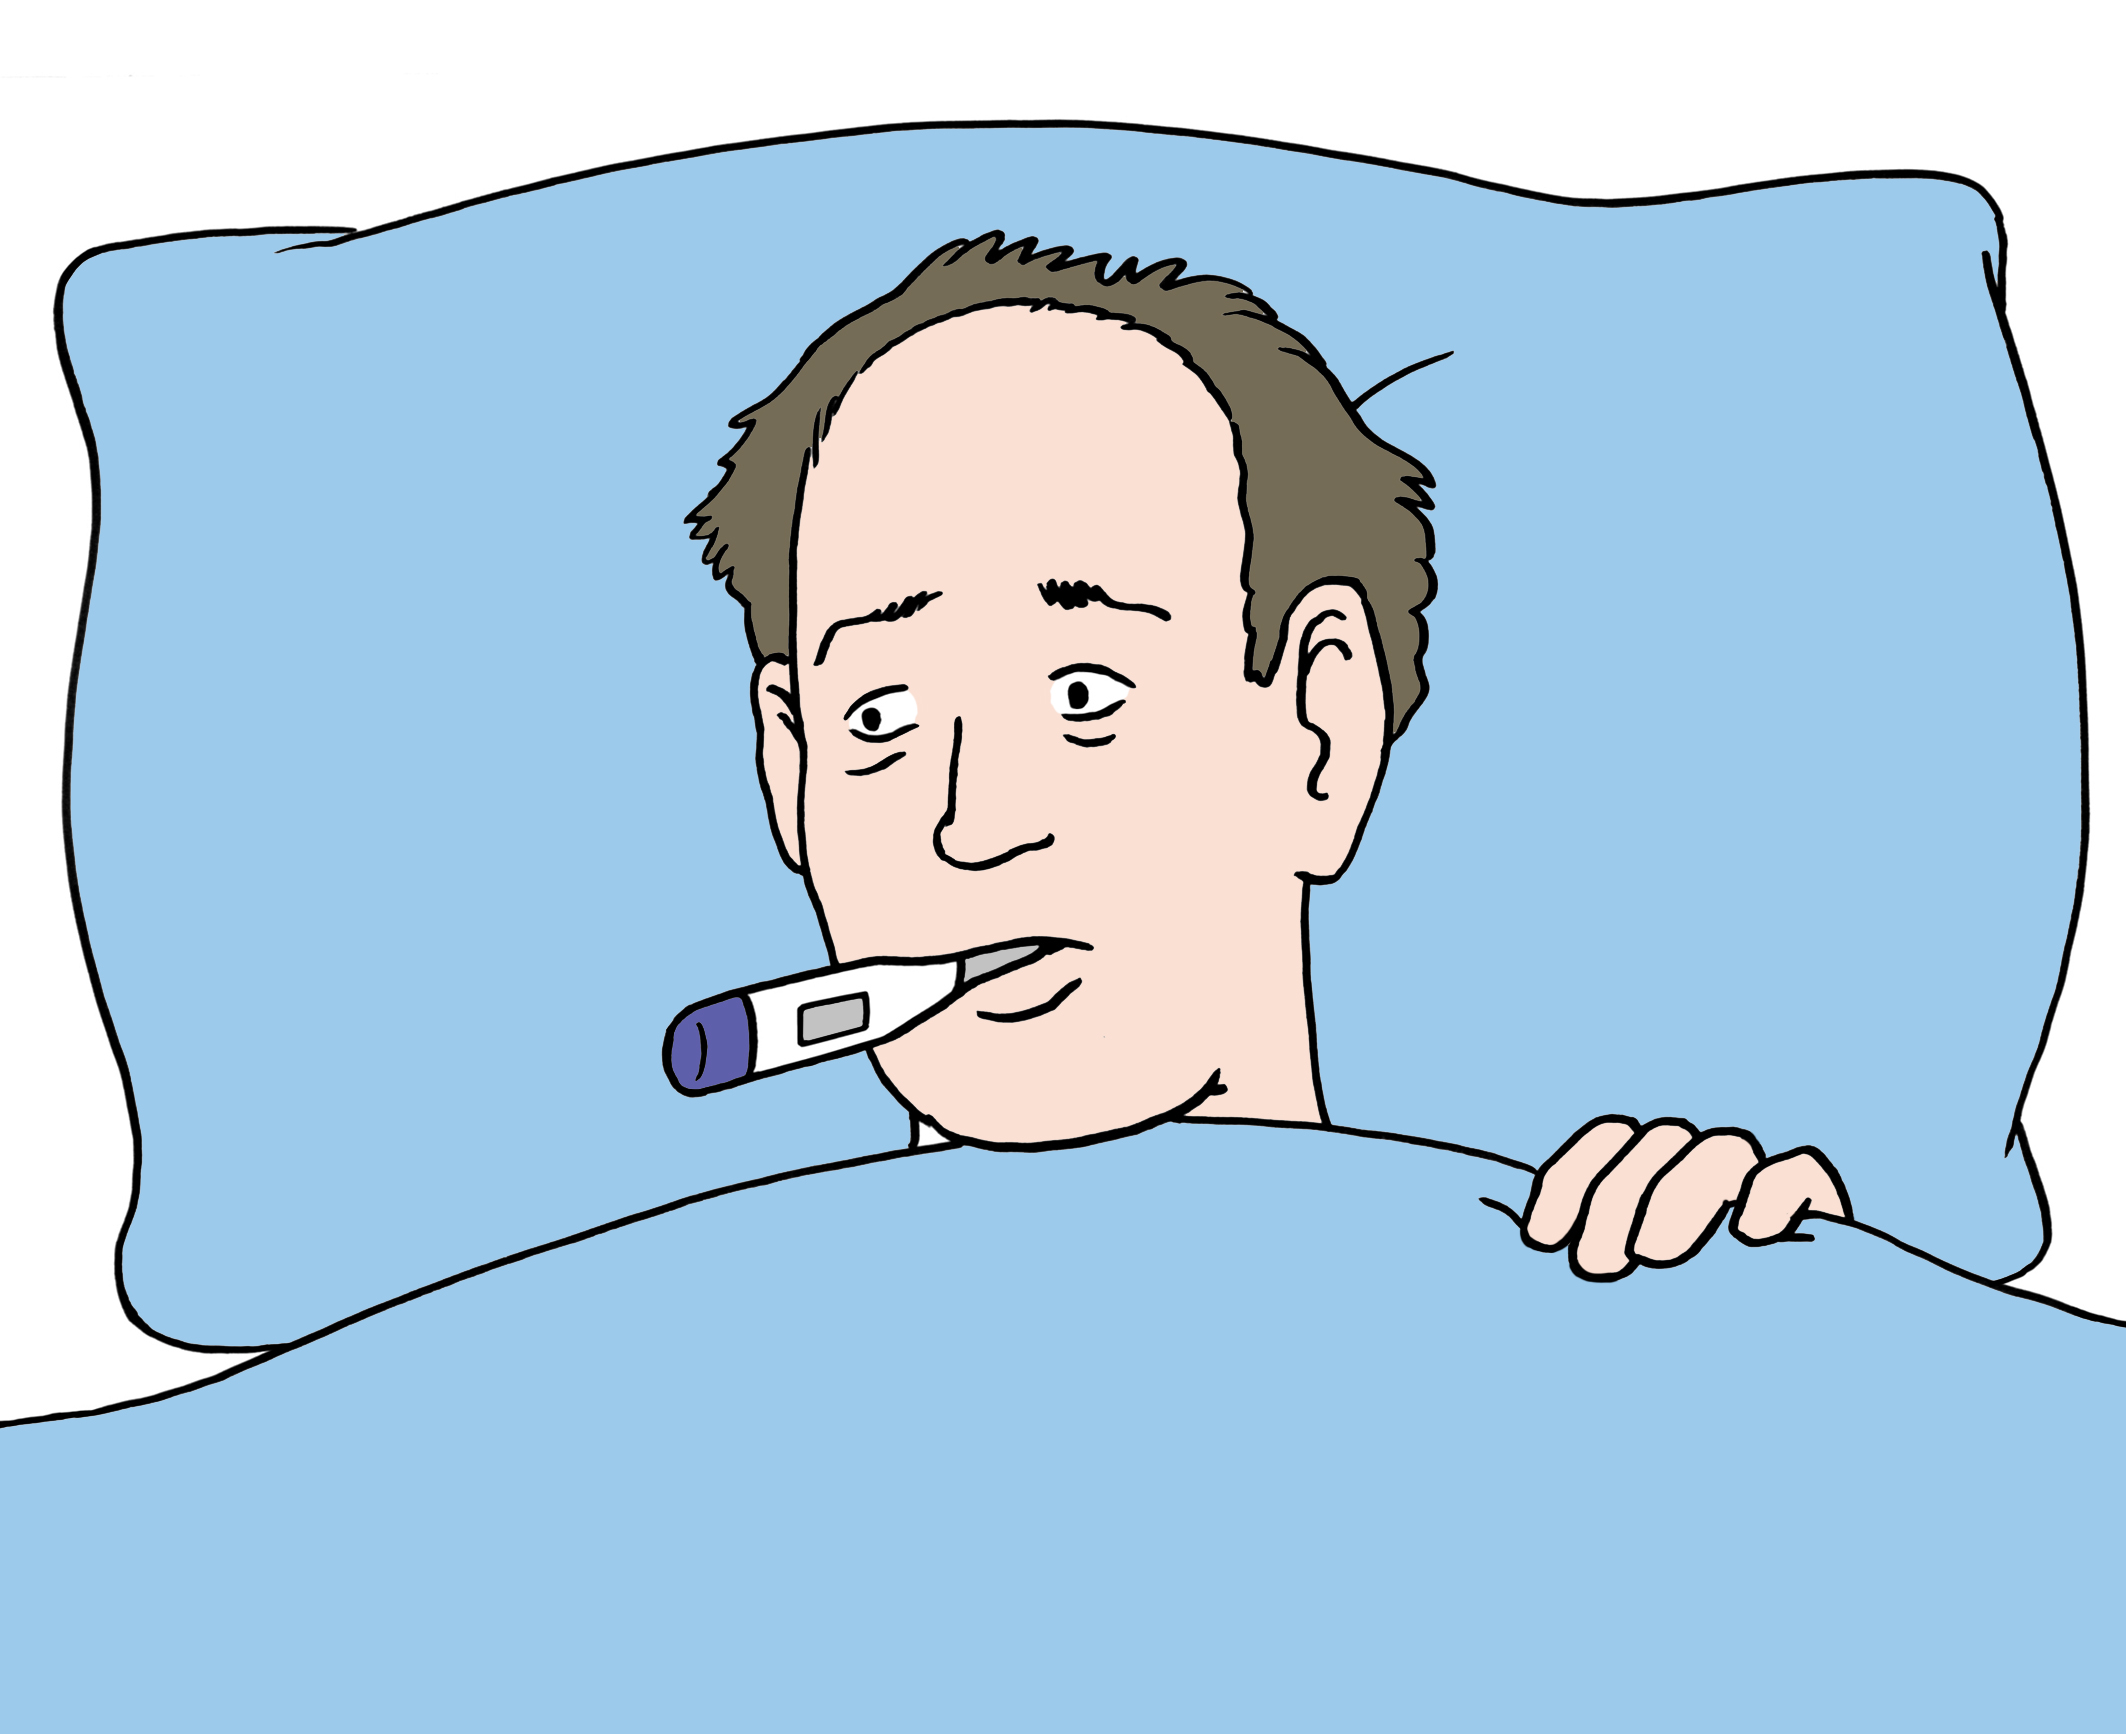 Mann liegt krank im Bett und misst Fieber